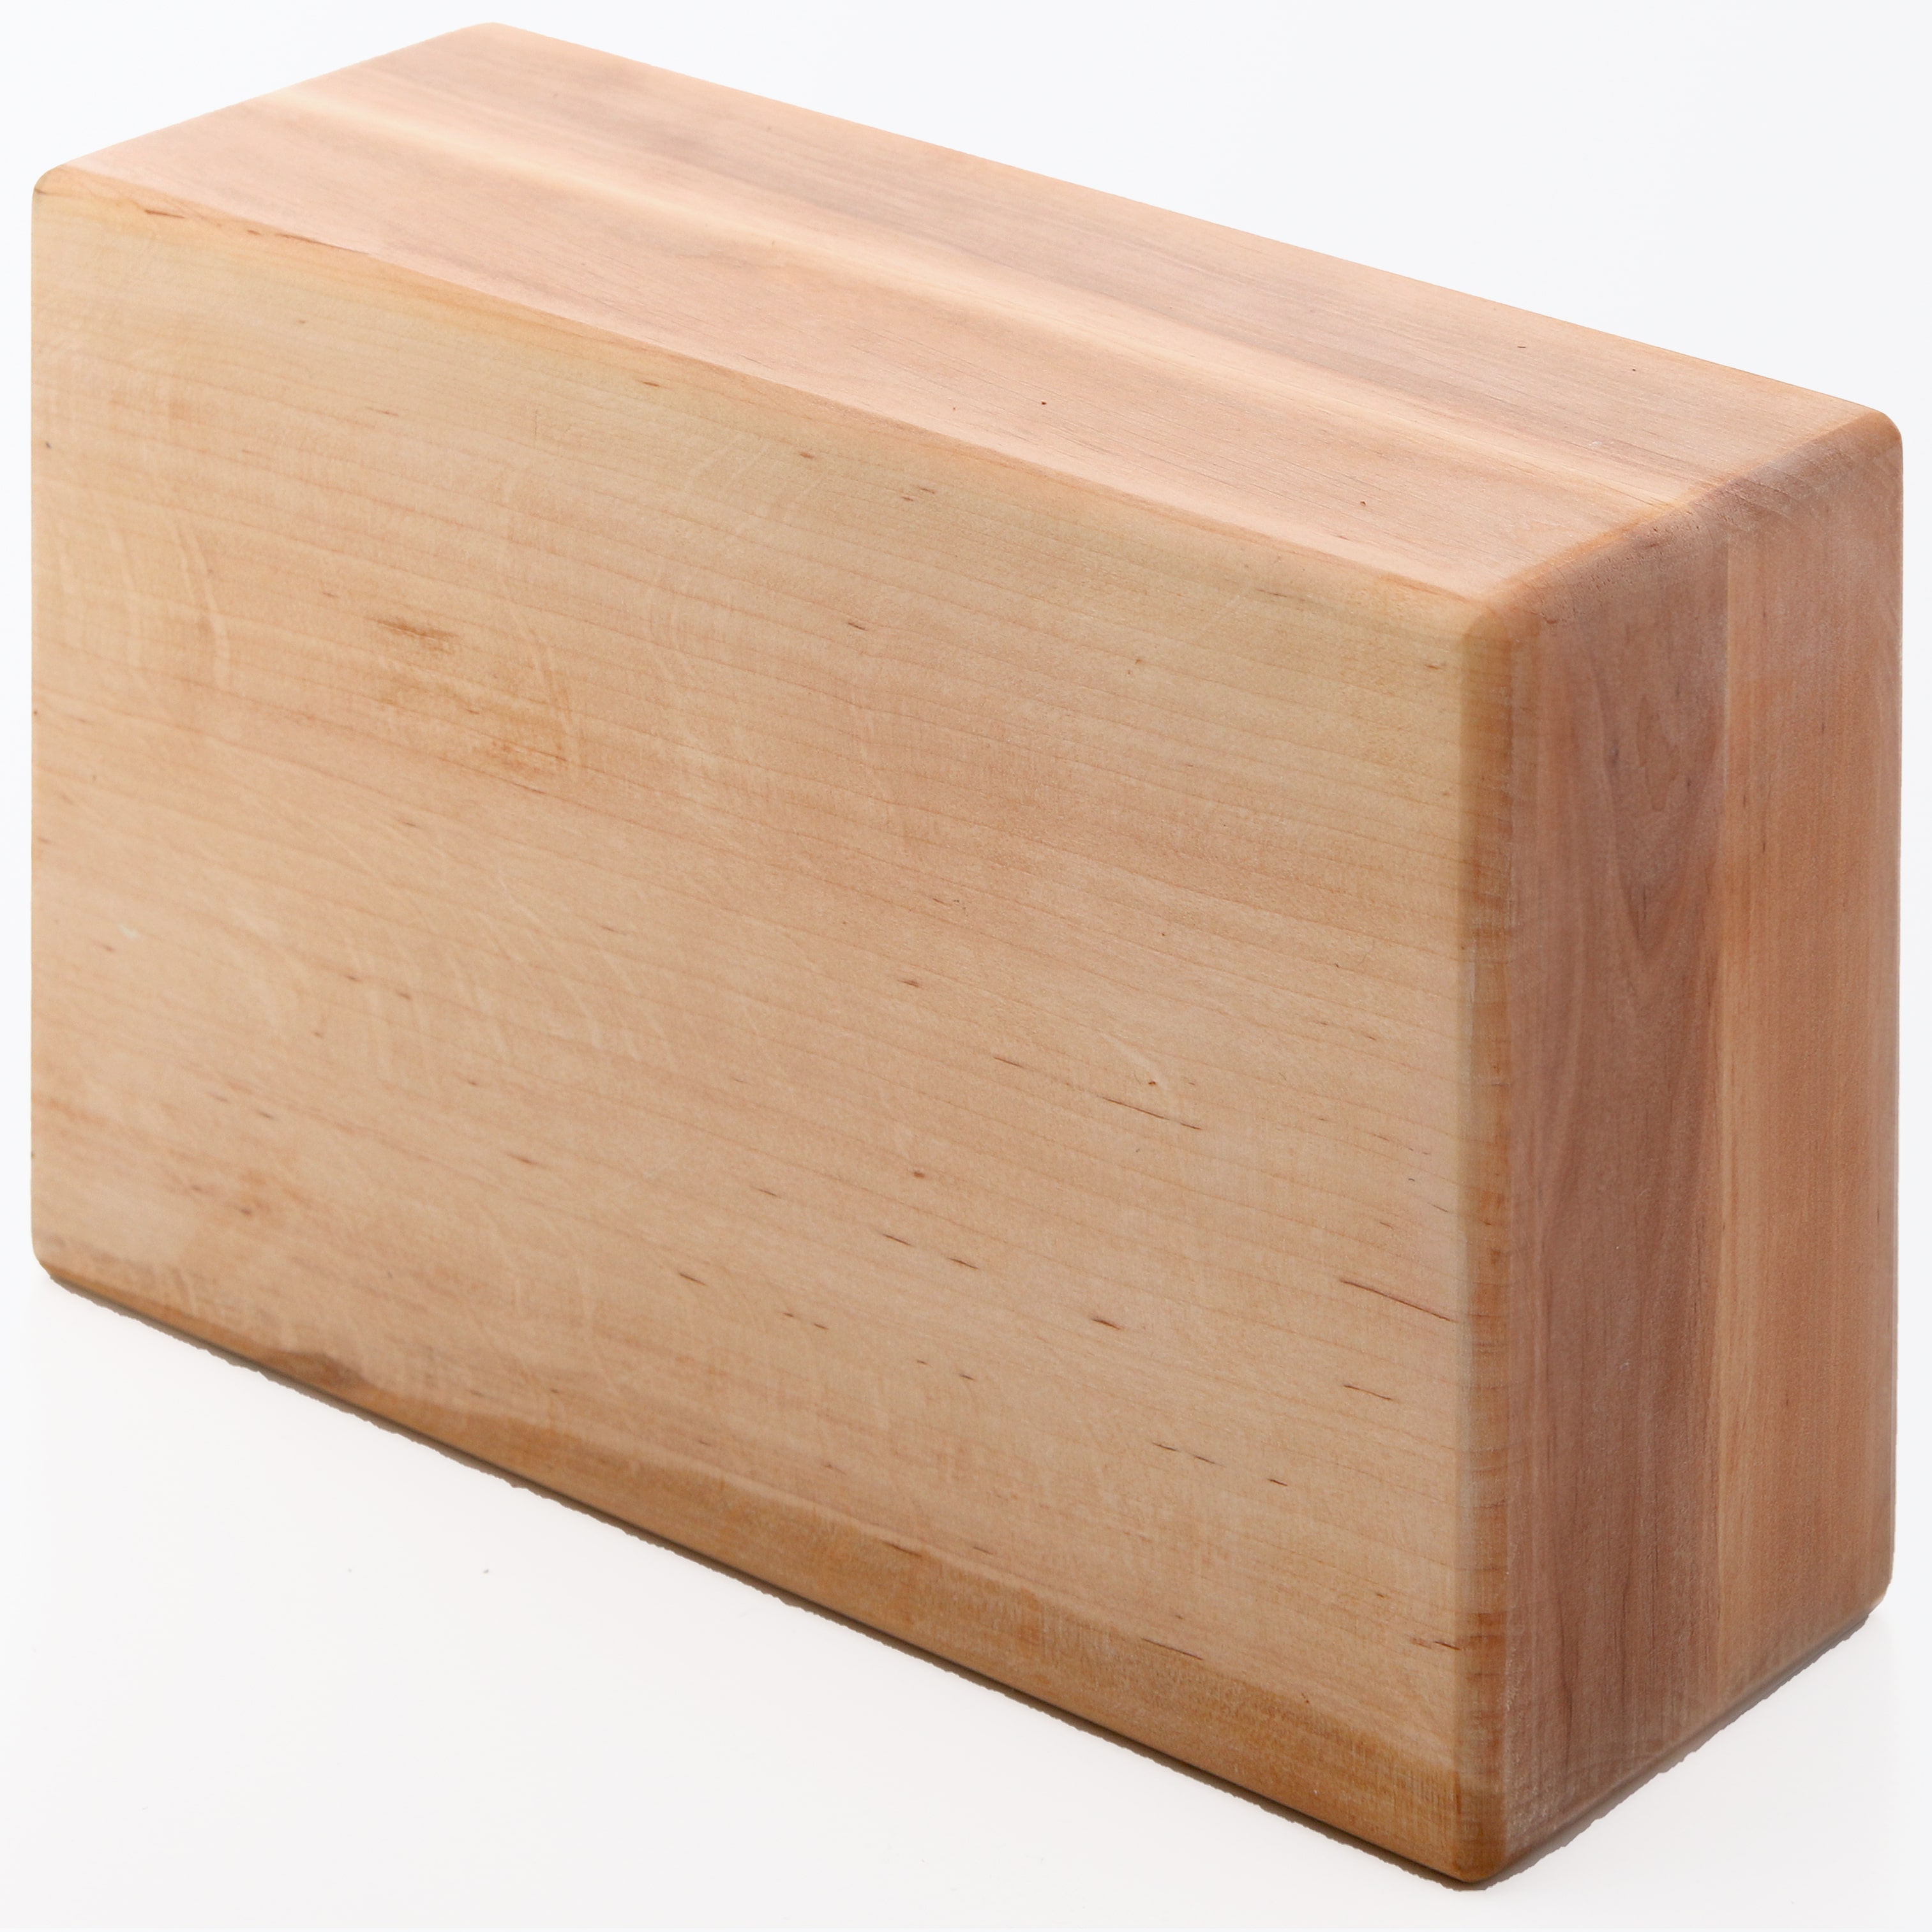 Блоки дерев'яні для йоги (1шт) — Кубики для асан з дерева — Цеглини для йоги 